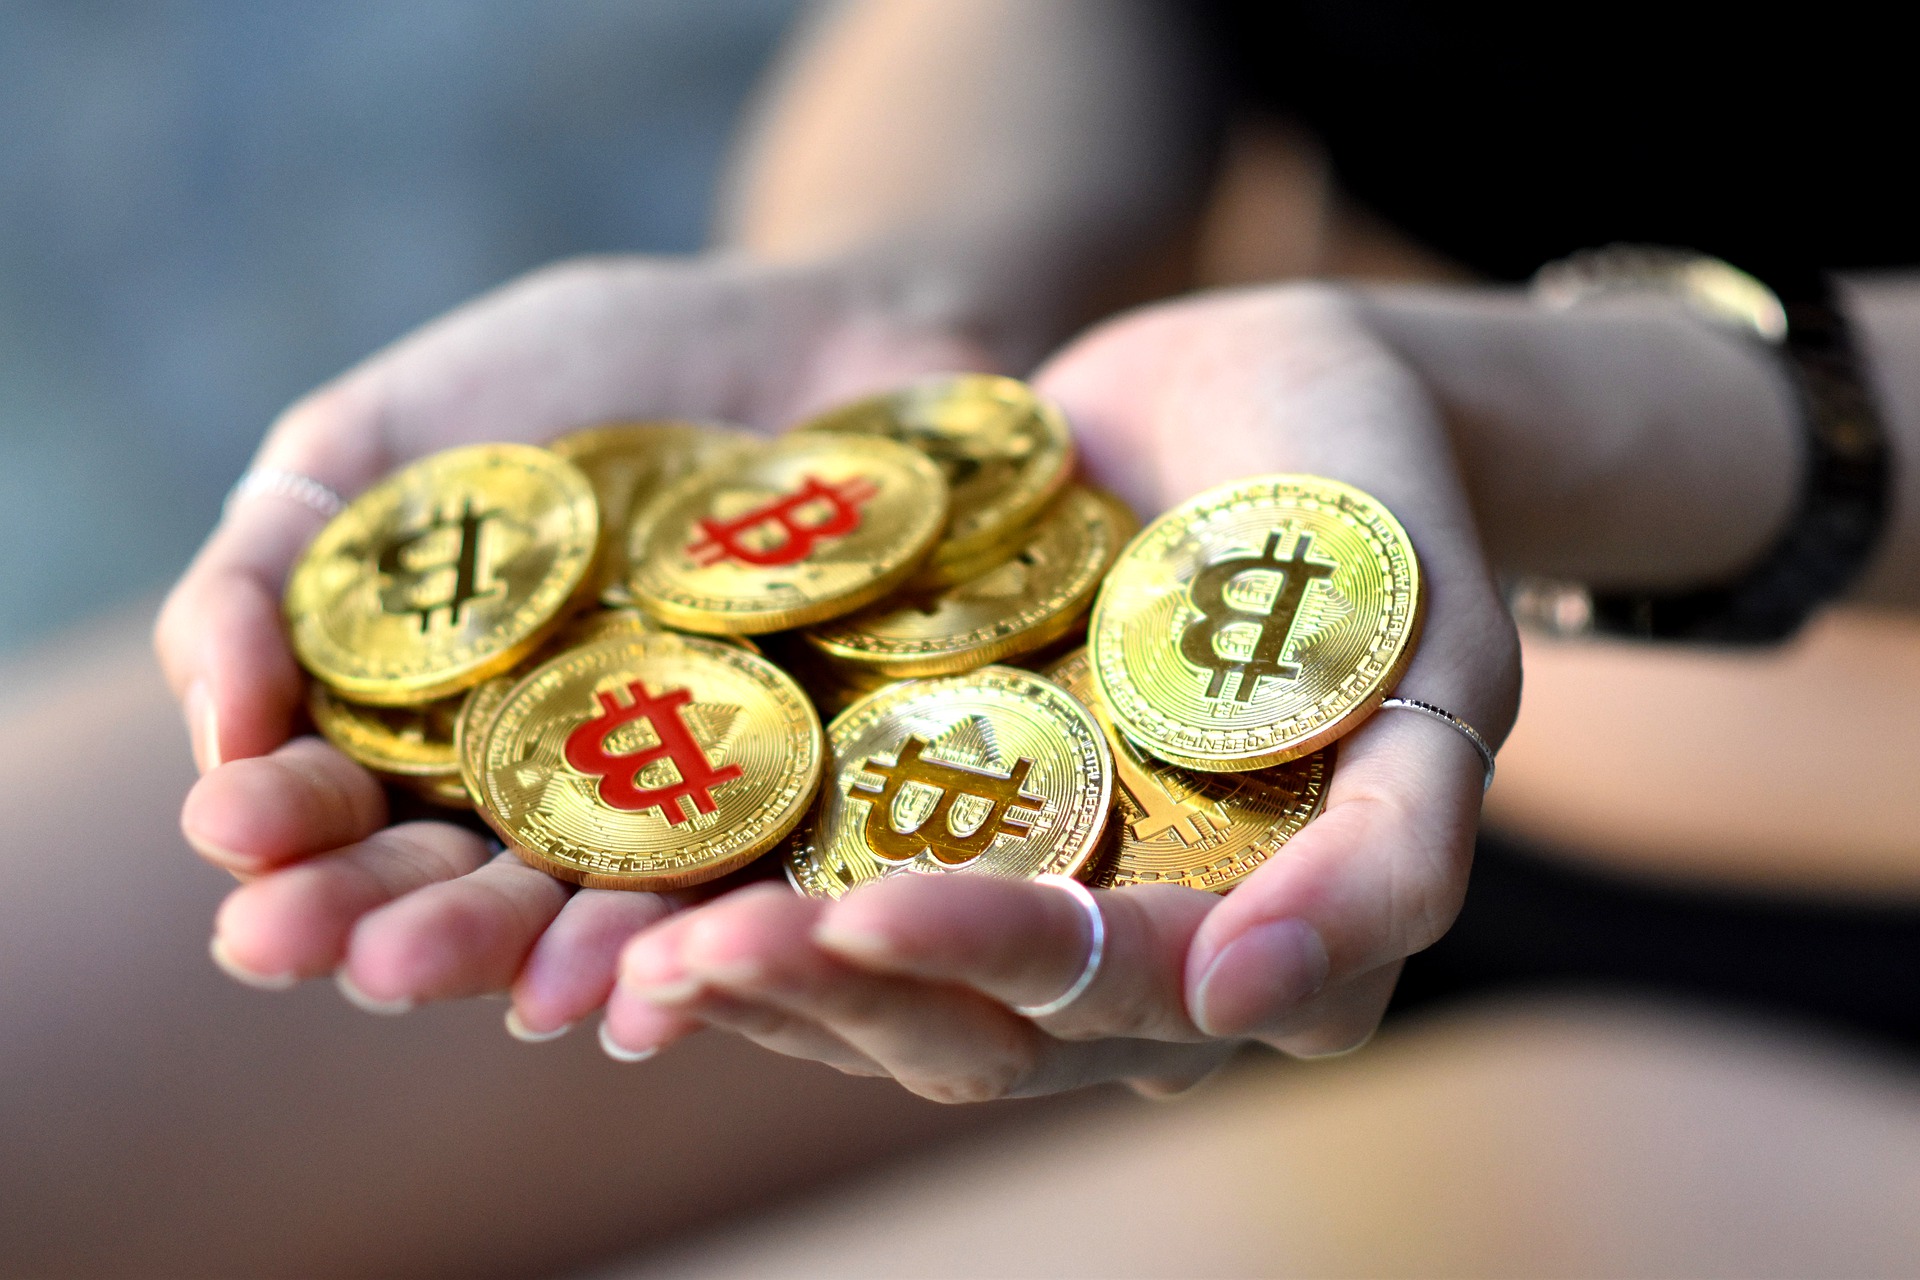 Fundos de Bitcoin surpreendem e têm saldo positivo após queda do mercado